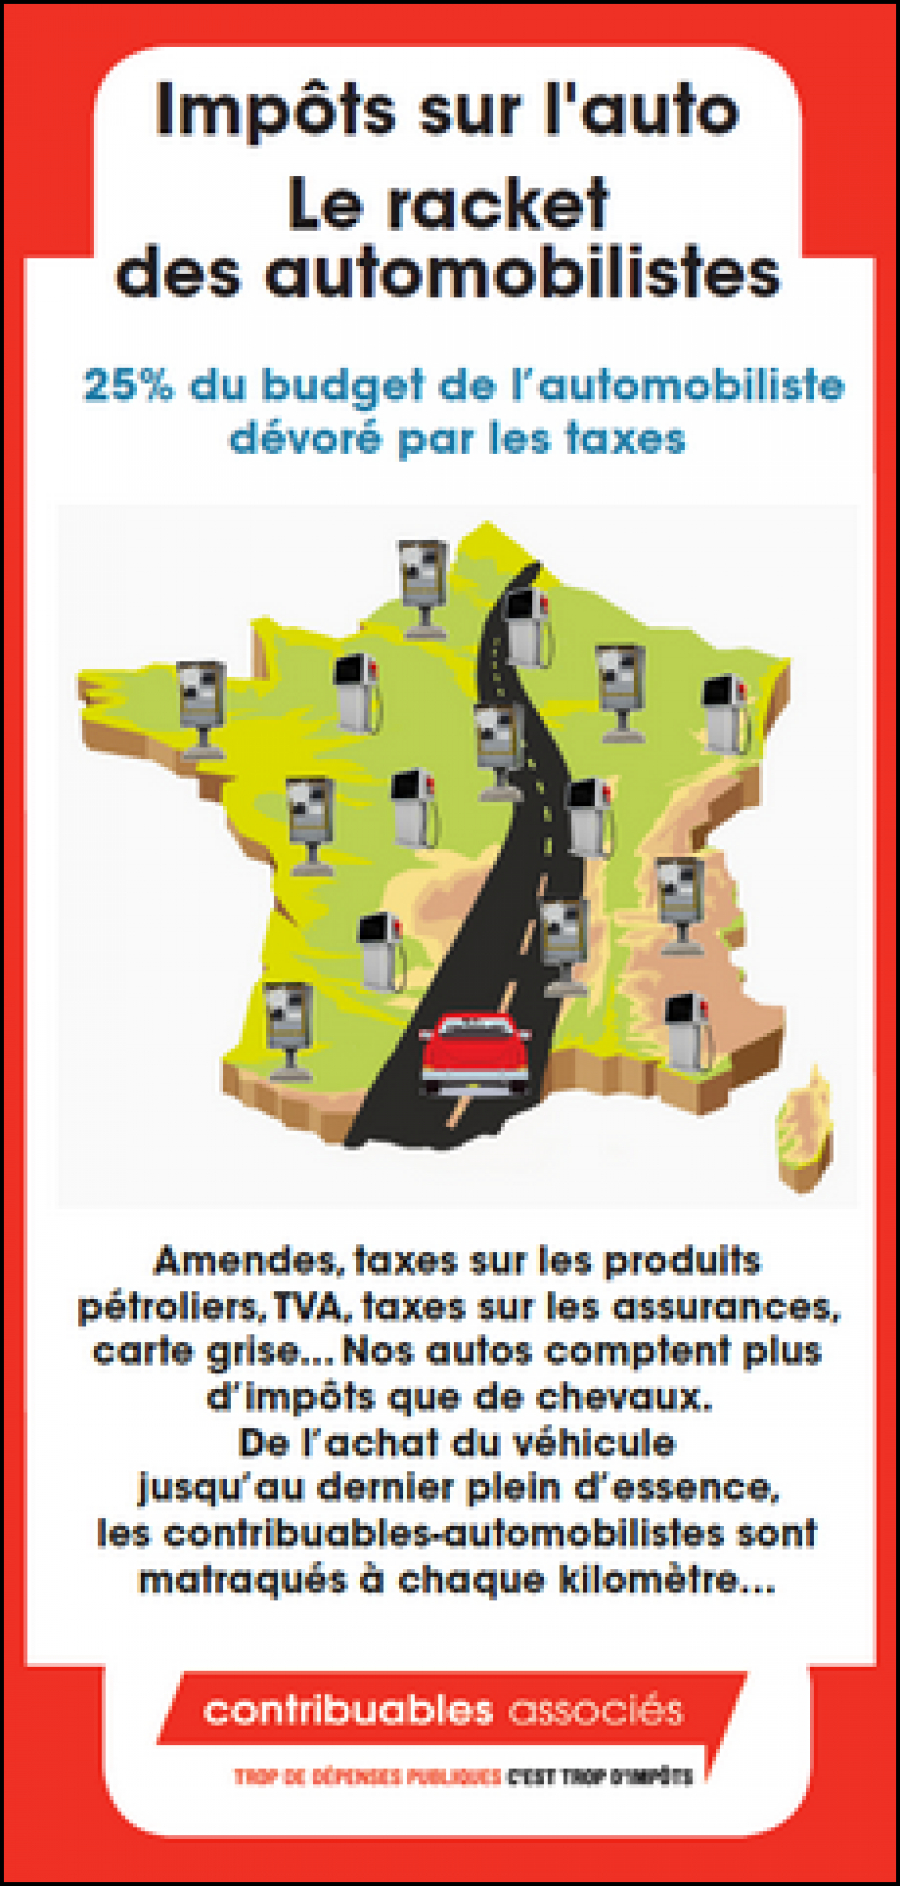 Impôts sur l’auto : découvrez comment l’État vous prend 1 540 euros par an, sans pour autant entretenir les routes